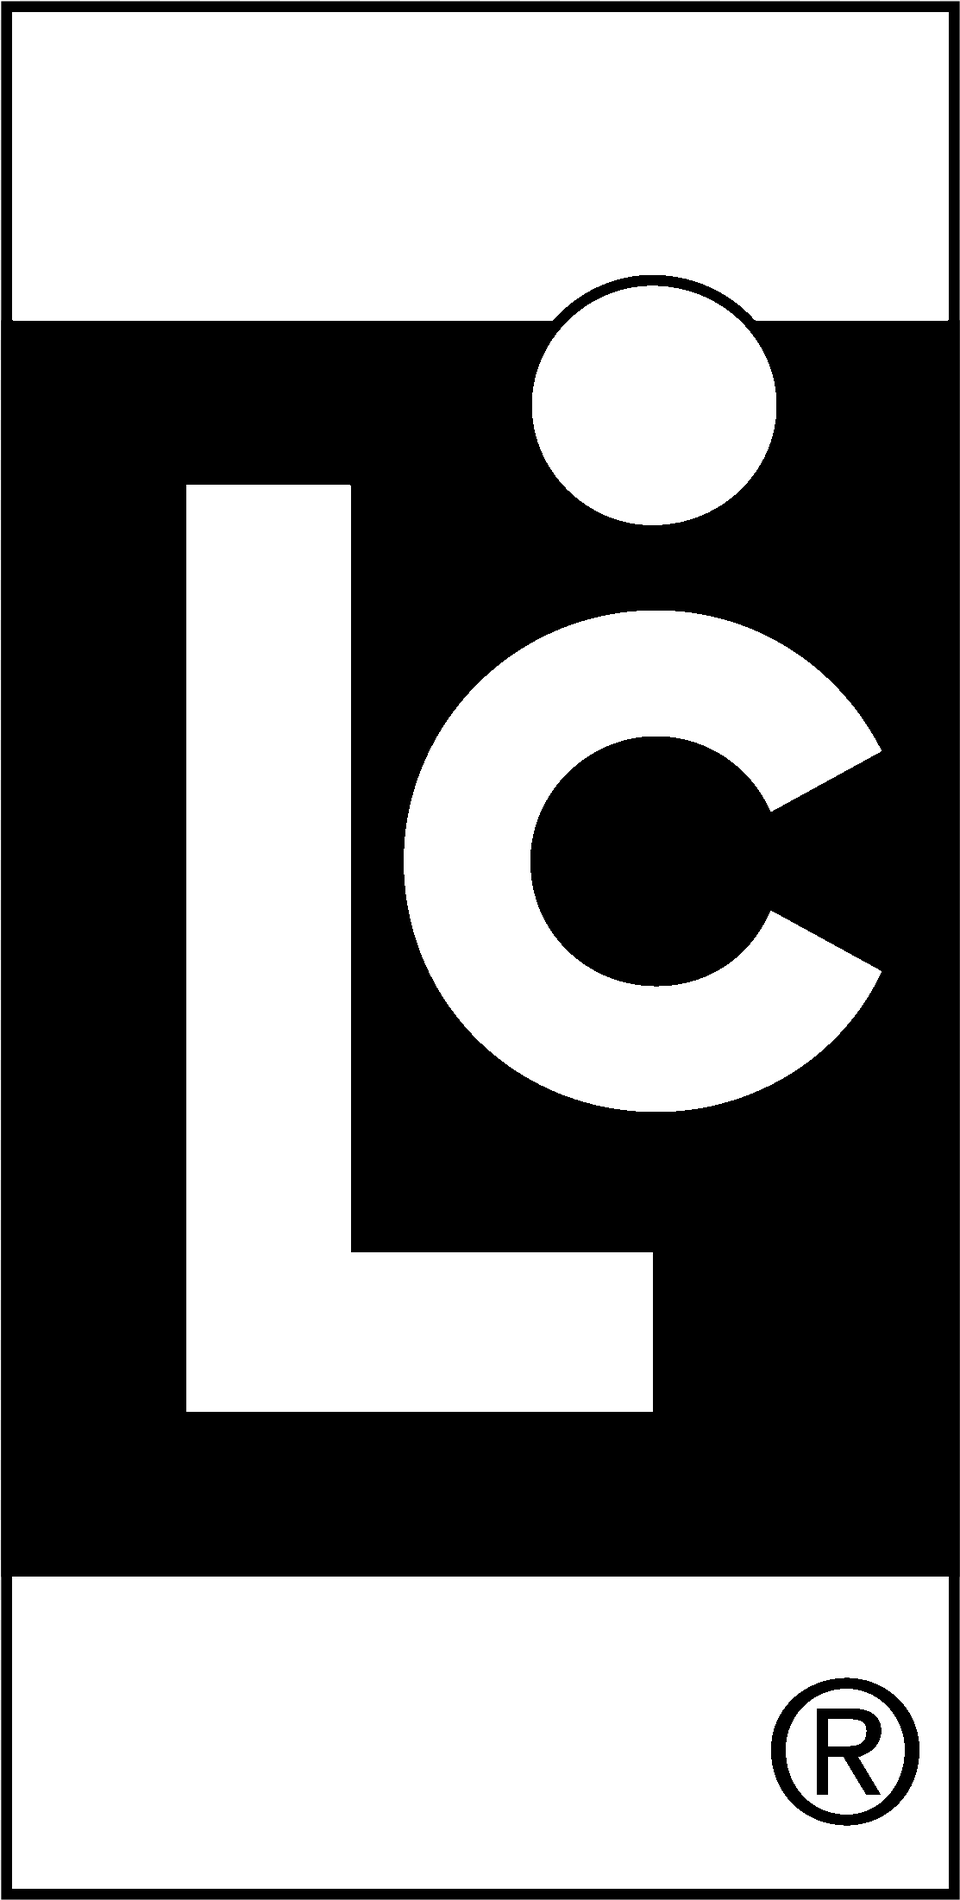 Liquid Controls Logo Black And White Liquid Controls, Number, Symbol, Text Free Transparent Png